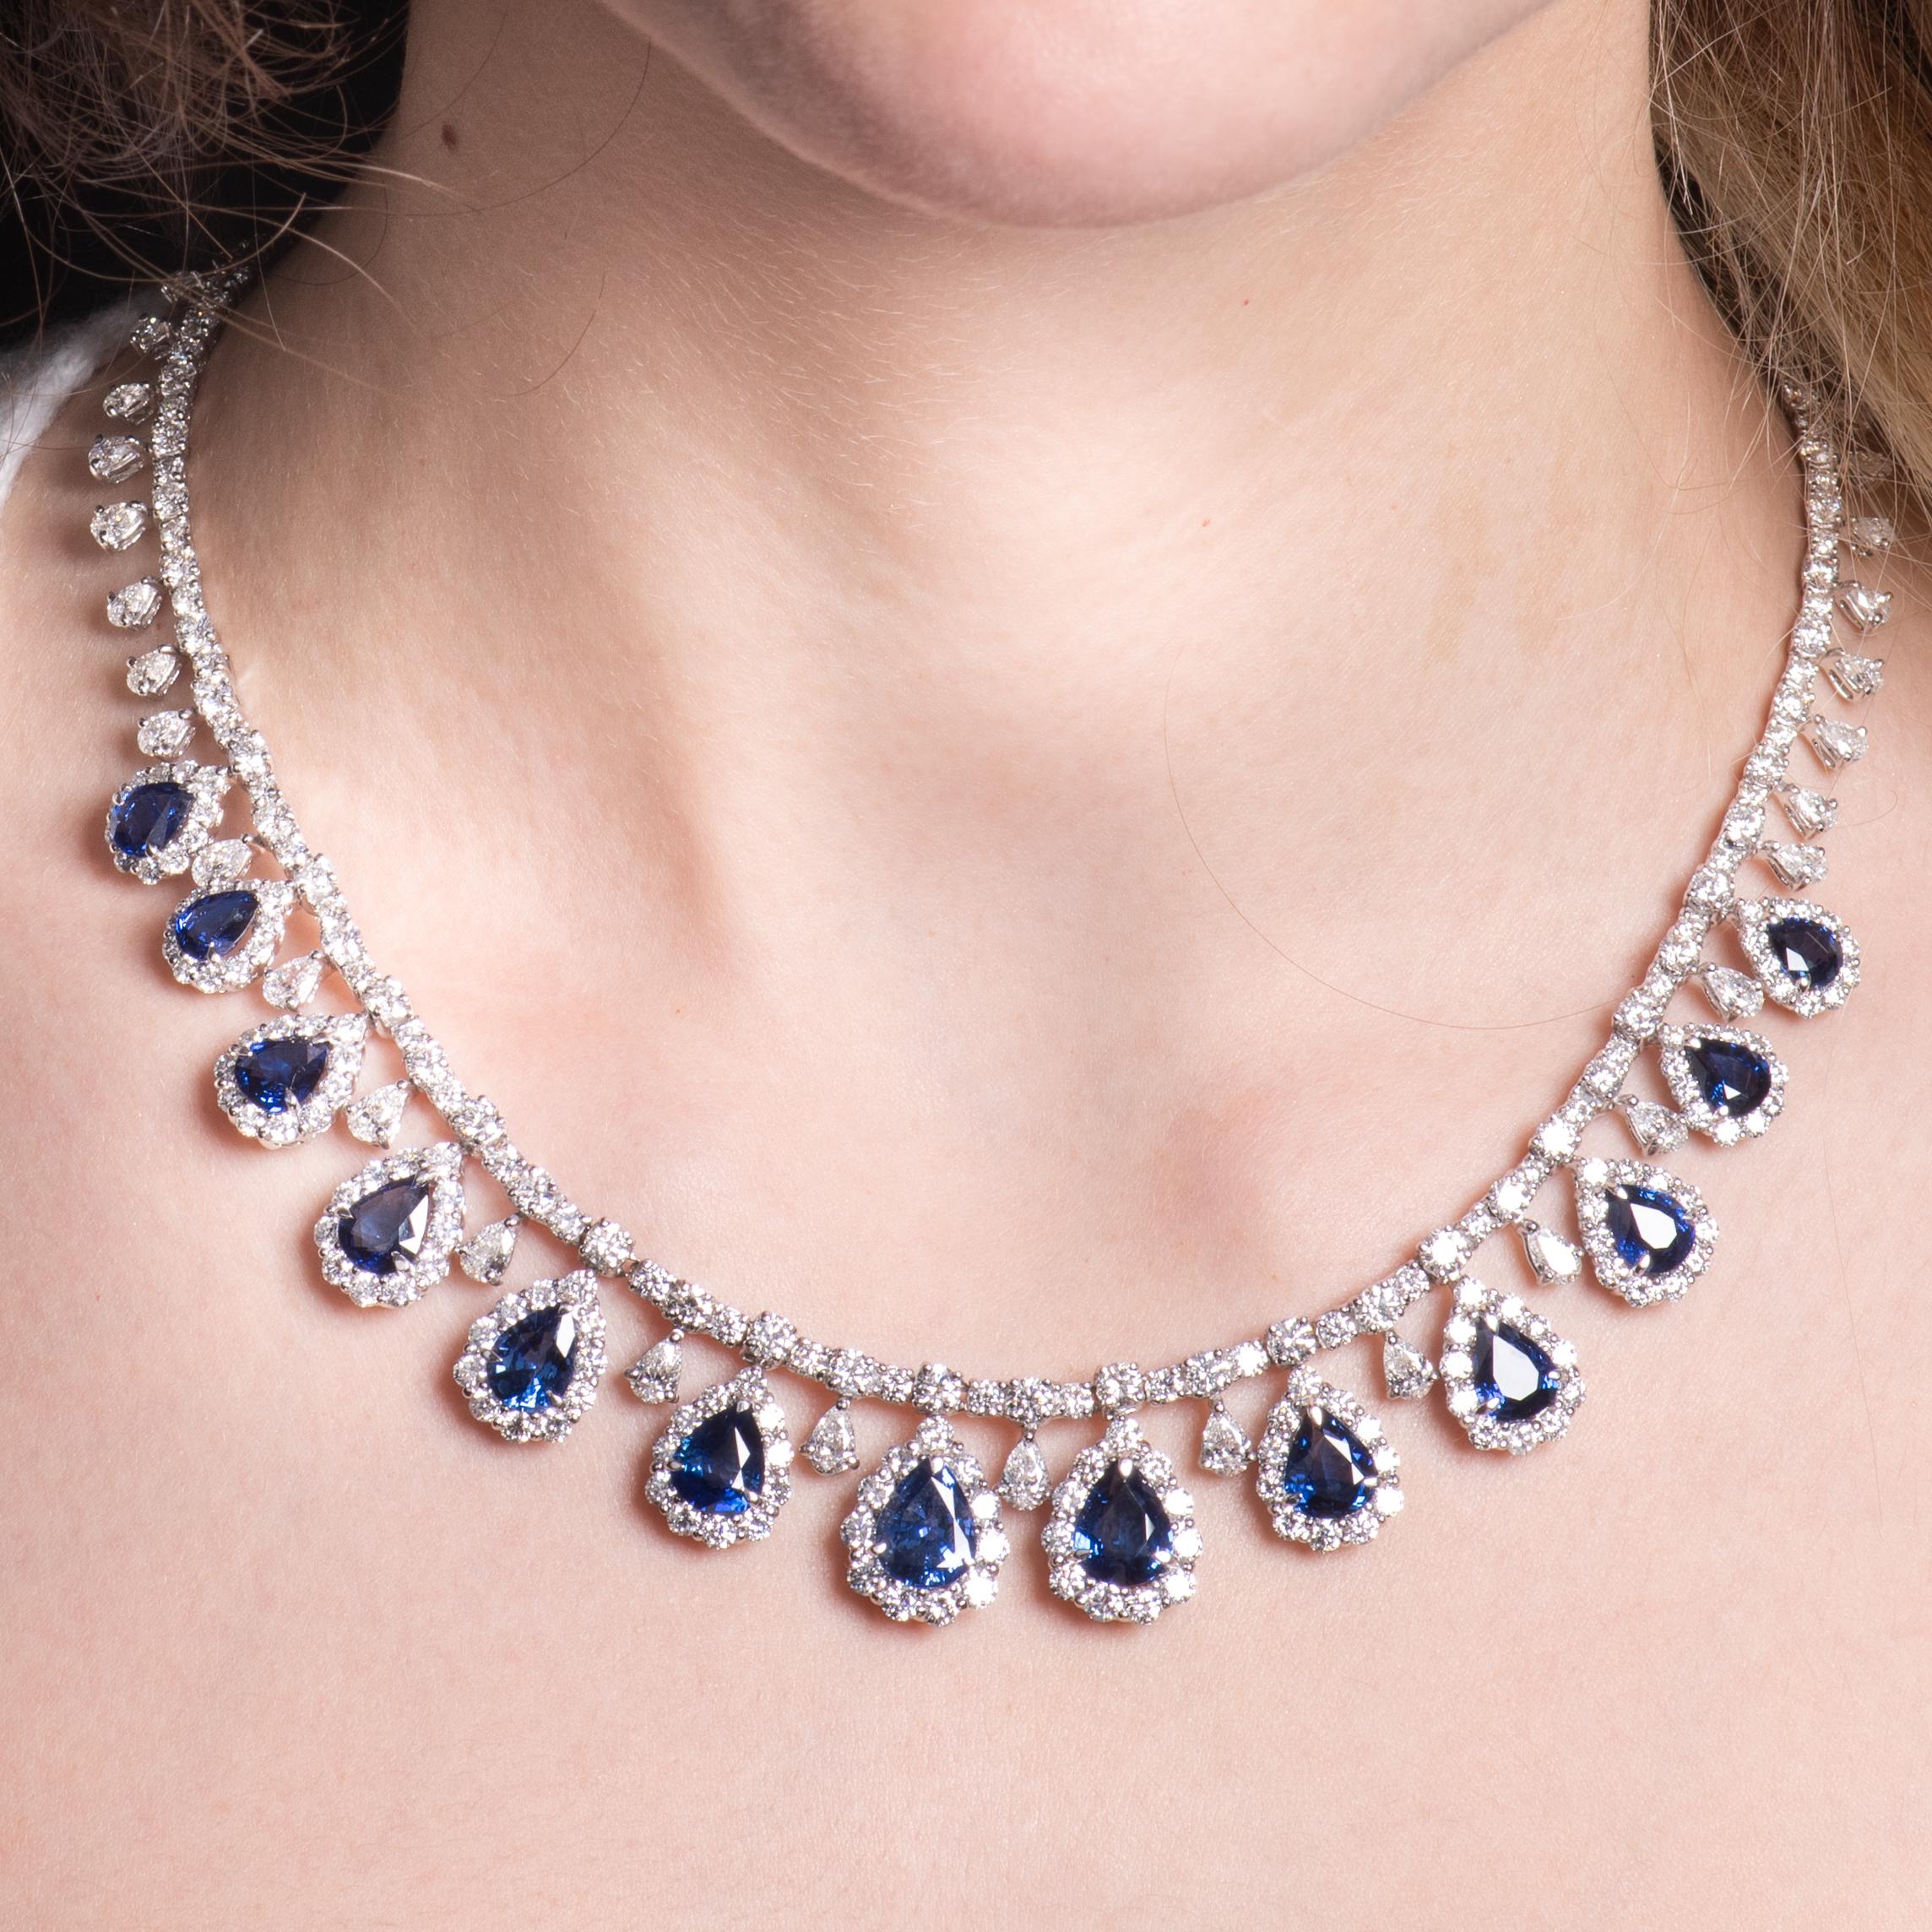 Dieses exquisite Collier besteht aus 23,38 ct Gesamtgewicht in birnenförmigen, satt königsblauen Saphiren, die von runden und birnenförmigen Diamanten umgeben sind, mit einem Gesamtgewicht von 28,34 ct. Die Diamanten wickeln sich um die gesamte